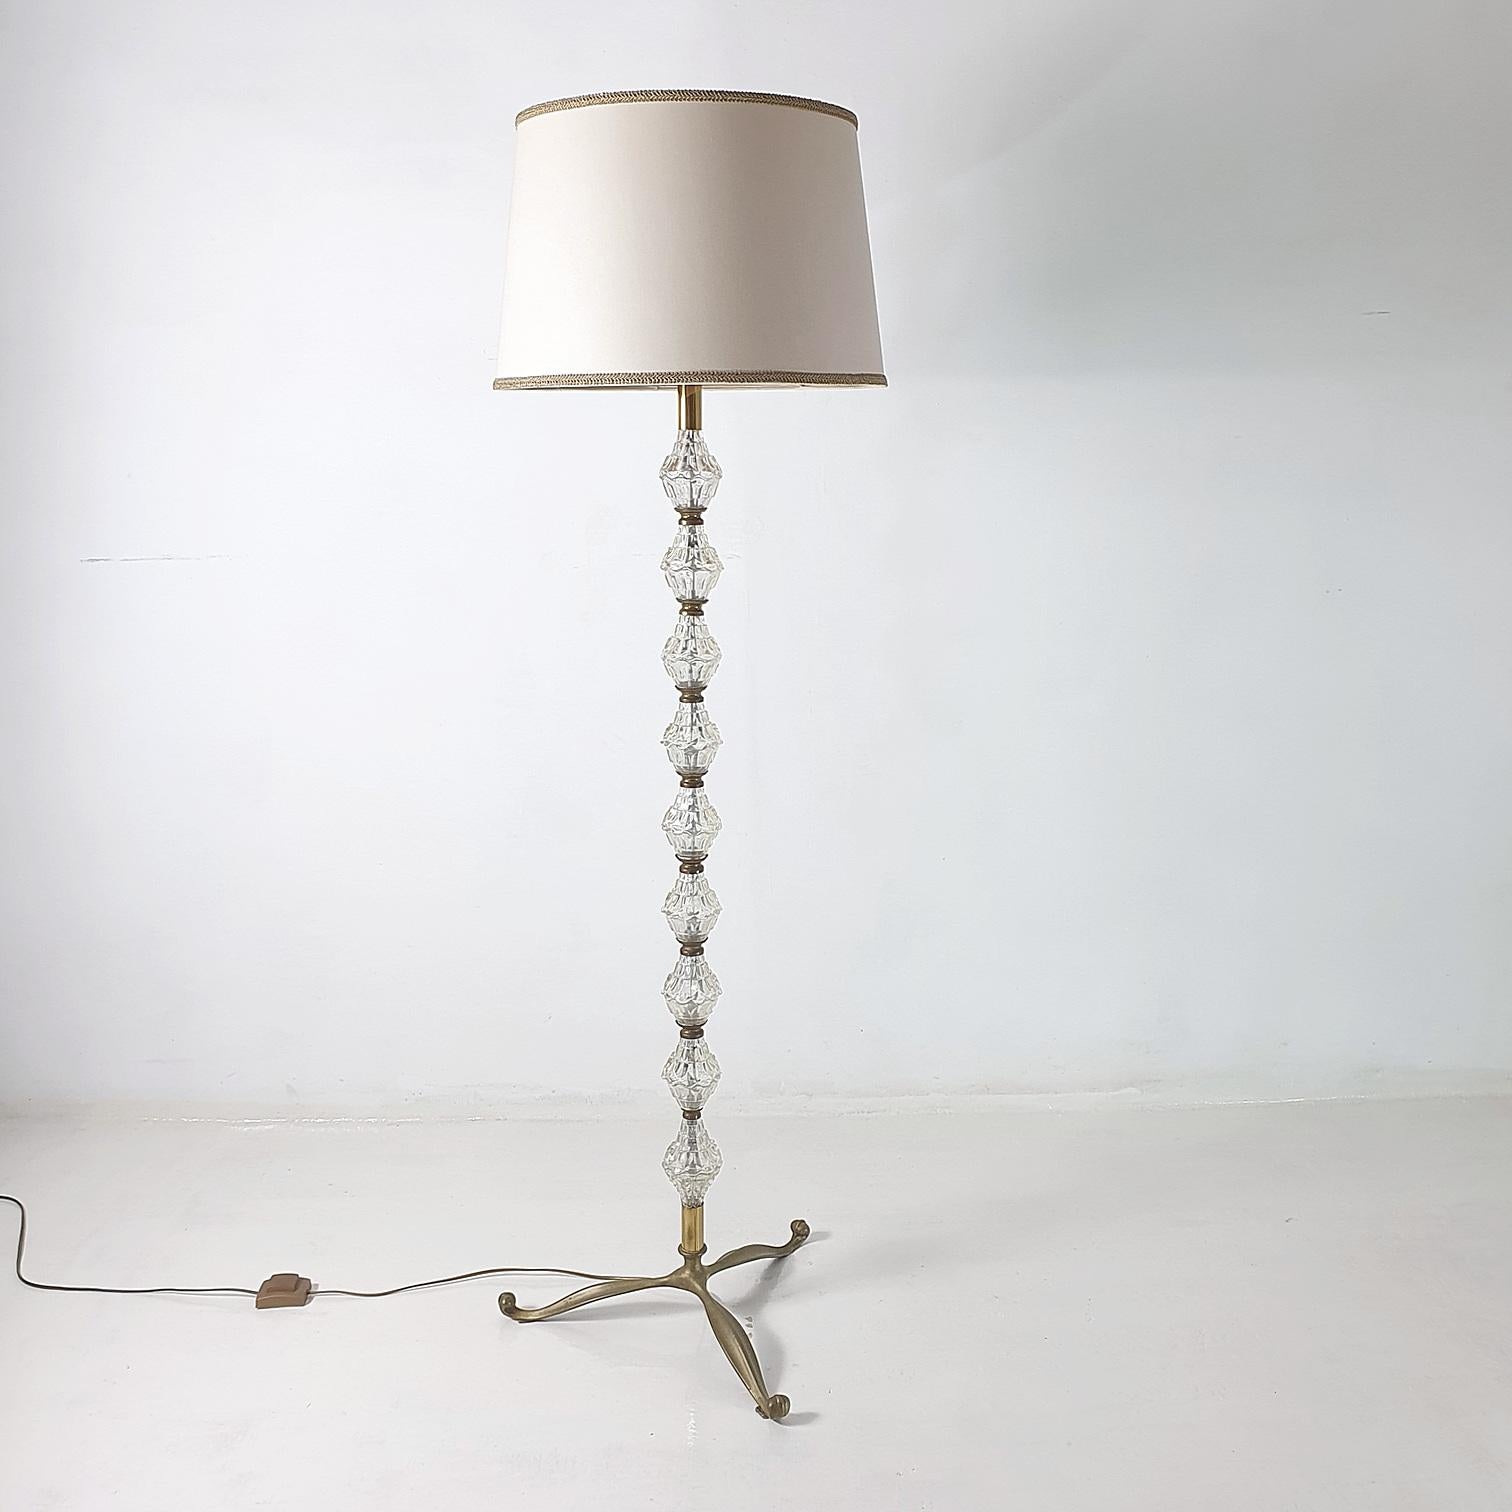 Eine elegante Stehlampe aus der Mitte des Jahrhunderts, hergestellt in Italien in den 1950er Jahren aus Glas und Metall, gekrönt mit einem weißen Lampenschirm mit Goldverzierung. Der Schirm ist innen bräunlich gefärbt und leuchtet warm, wenn er